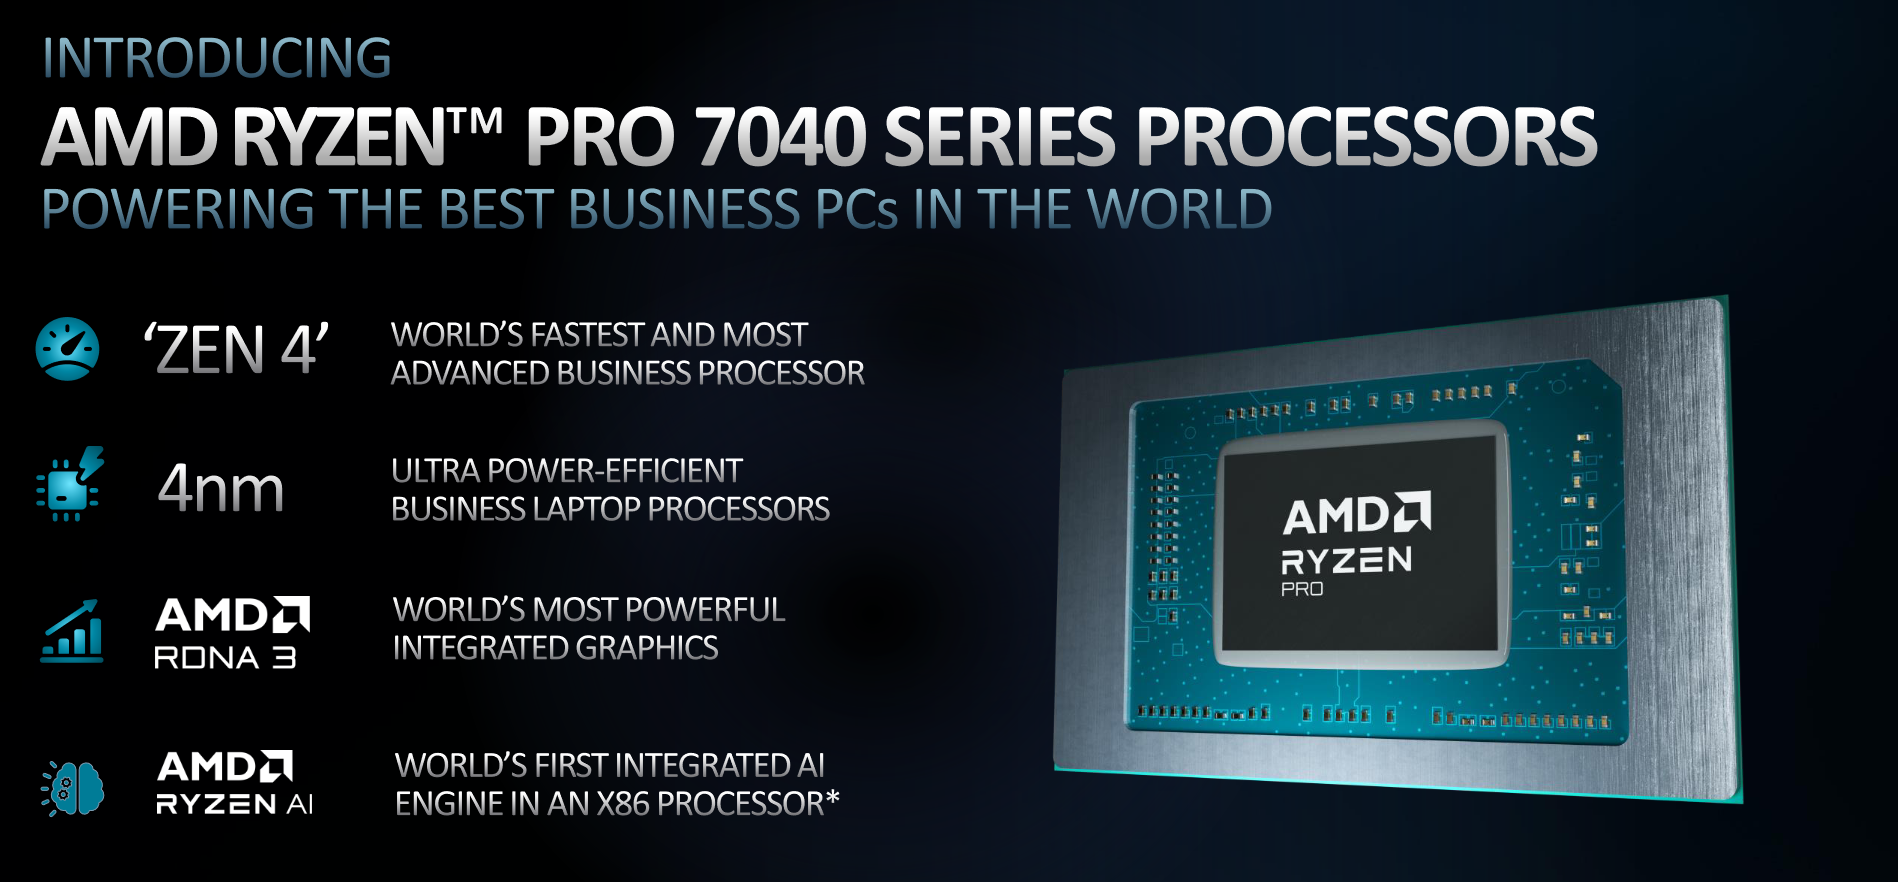 Resmi AMD Ryzen Pro 7040 Meluncur di Indonesia, Laptop Dengan AI